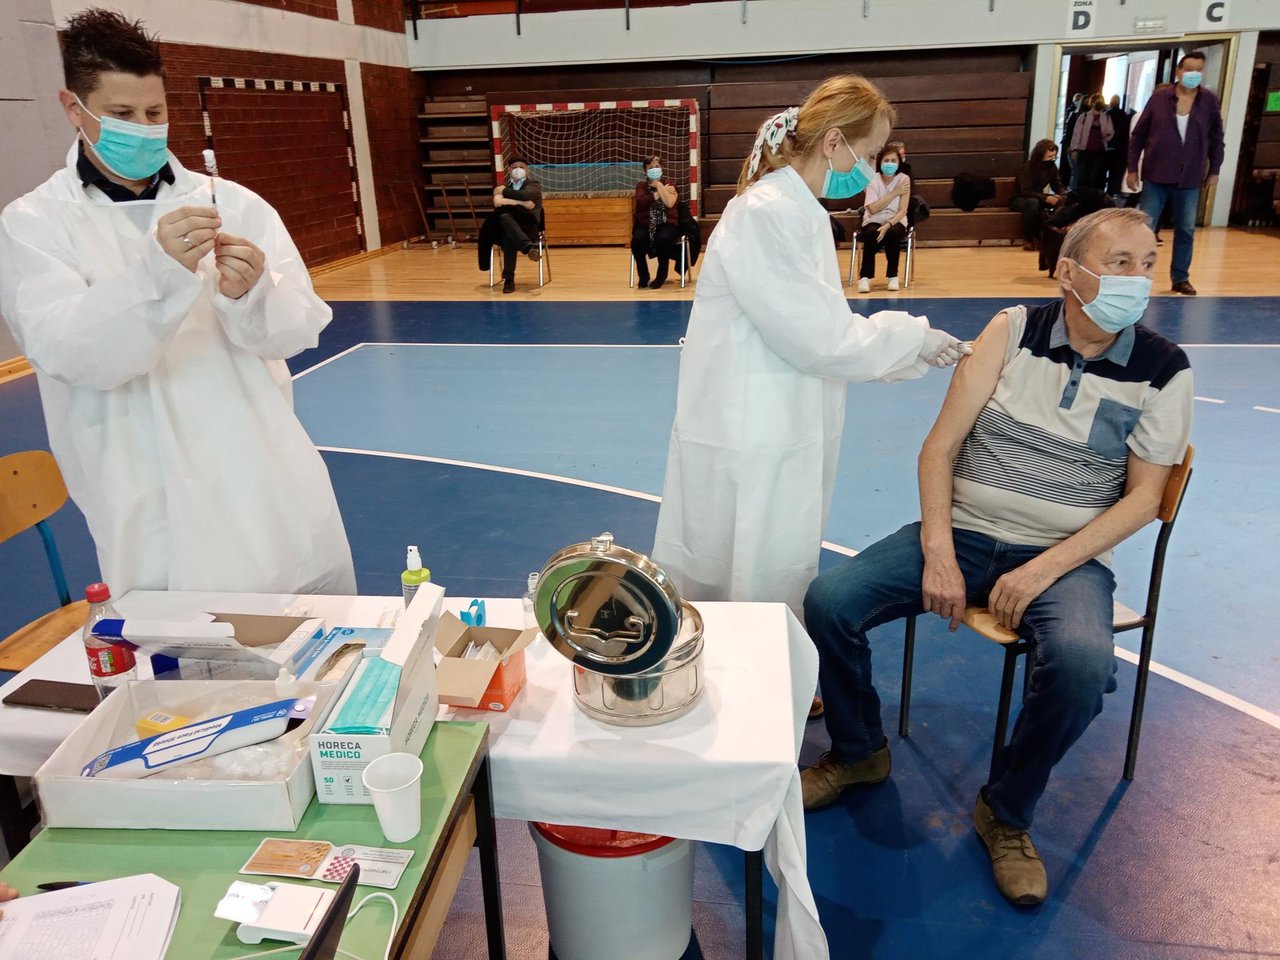 Fotografija: U Dvorani europskih prvaka danas je bio organiziran punkt za cijepljenje protiv korona virusa/ Foto: Deni Marčinković